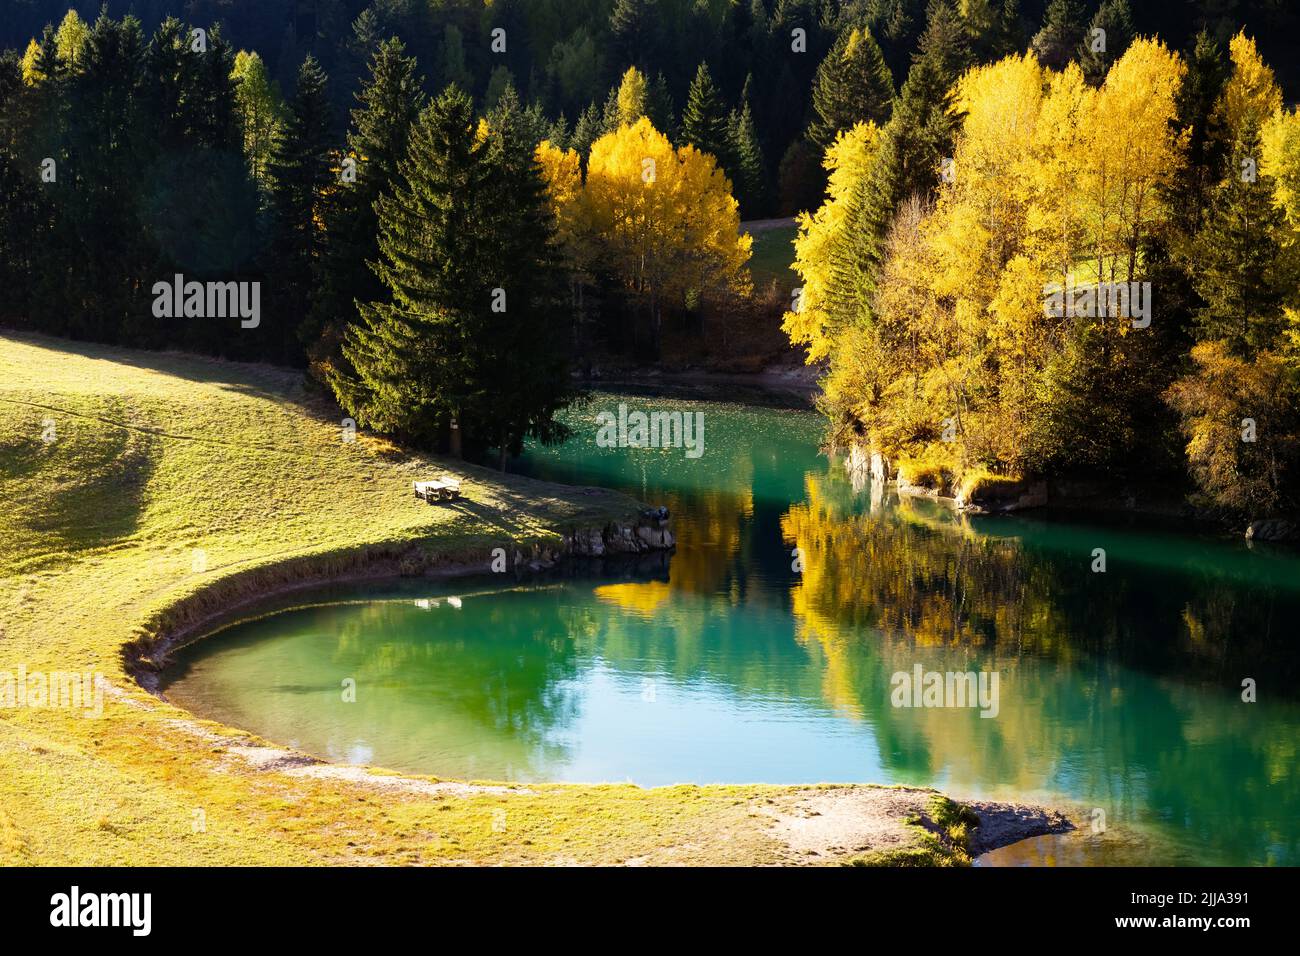 Sonnige Herbstansicht des Soraga Sees in Soraga di Fassa Dorf, Provinz Trient, Italien, Dolomiten Alpen. Landschaftsfotografie Stockfoto